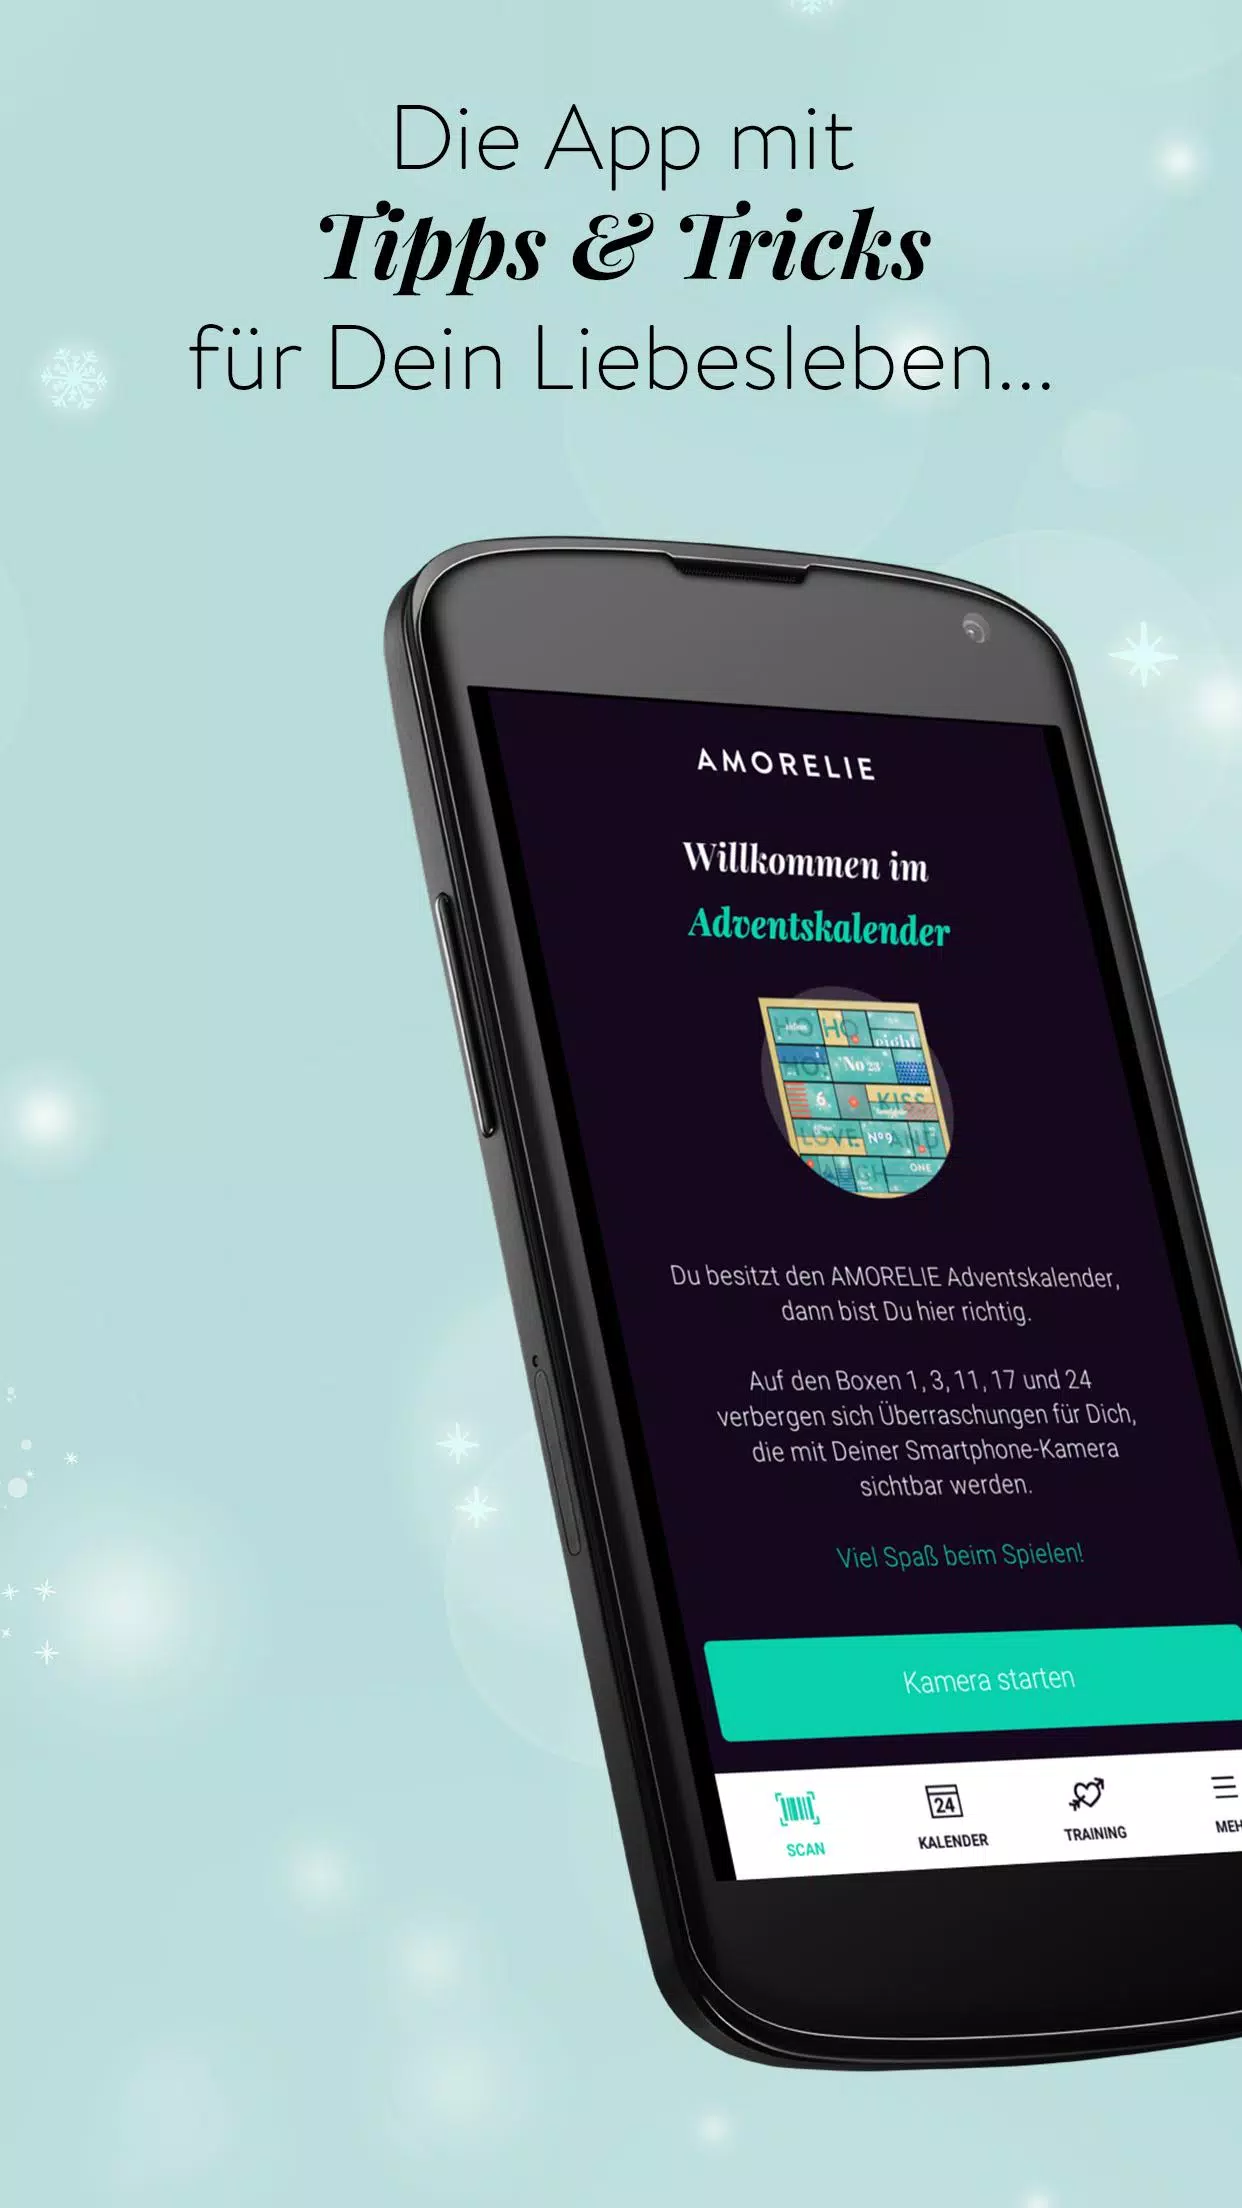 Adventskalender AMORELIE for Android - APK Download